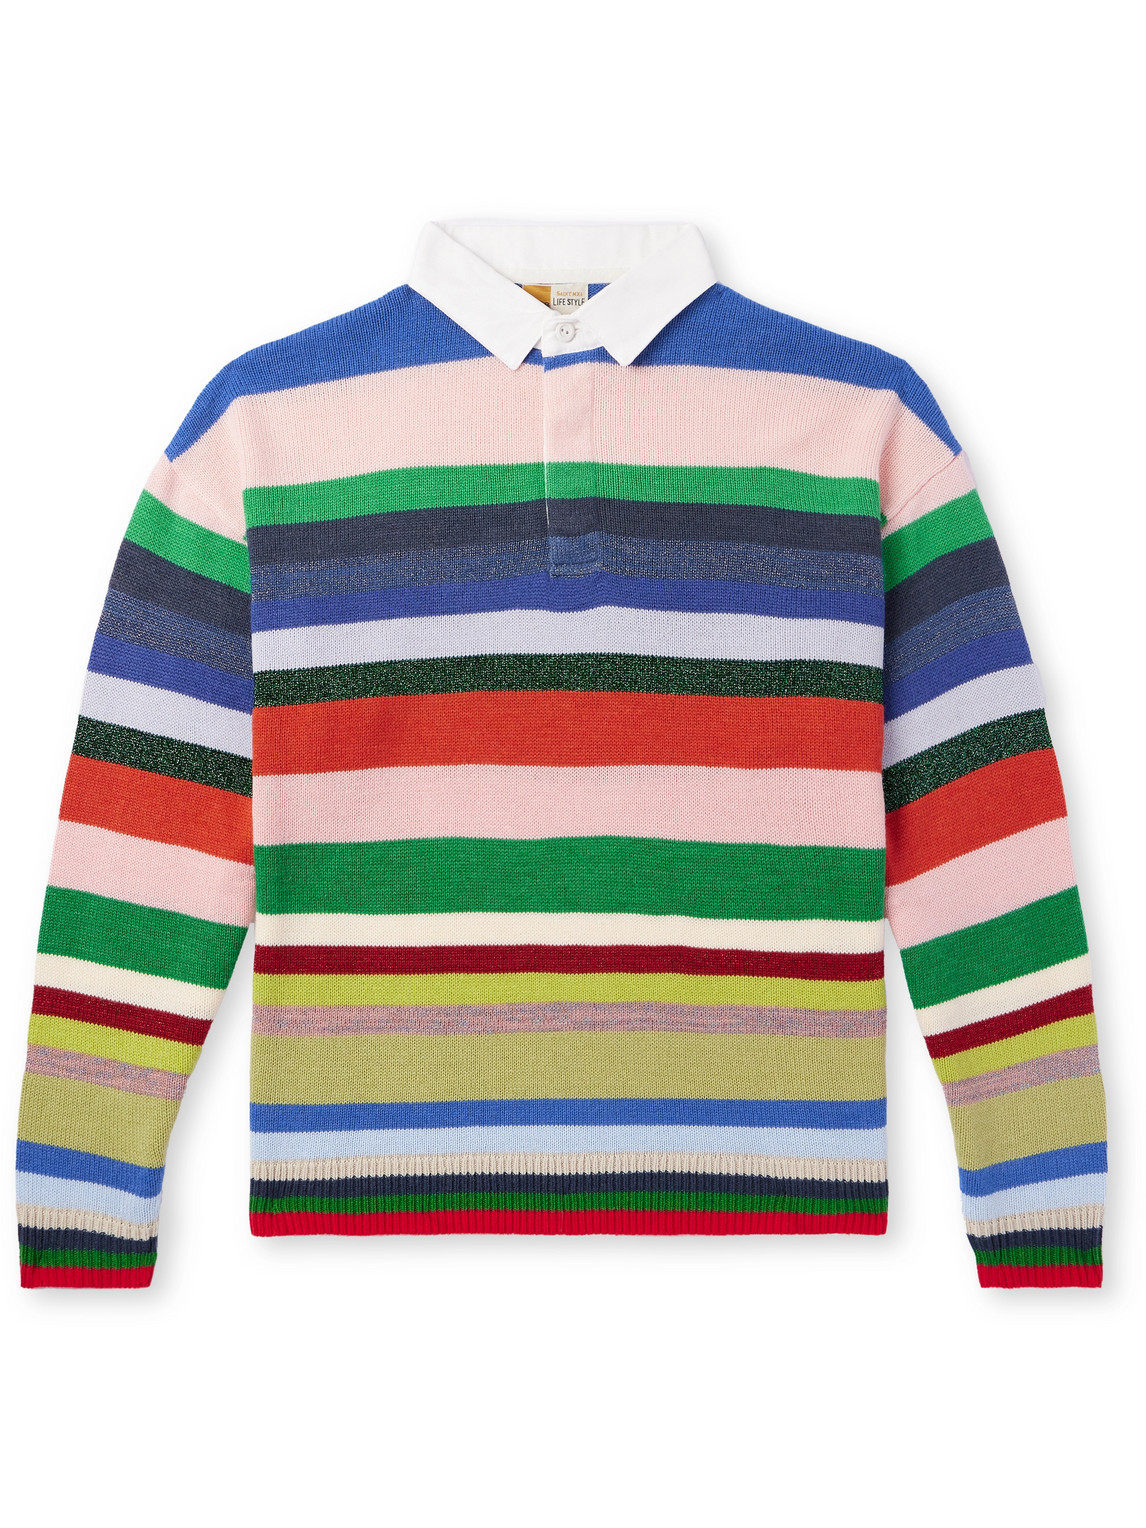 SAINT Mxxxxxx - LASTMAN Cotton Poplin-Trimmed Striped Knitted Polo Shirt - Men - Multi - L von SAINT Mxxxxxx